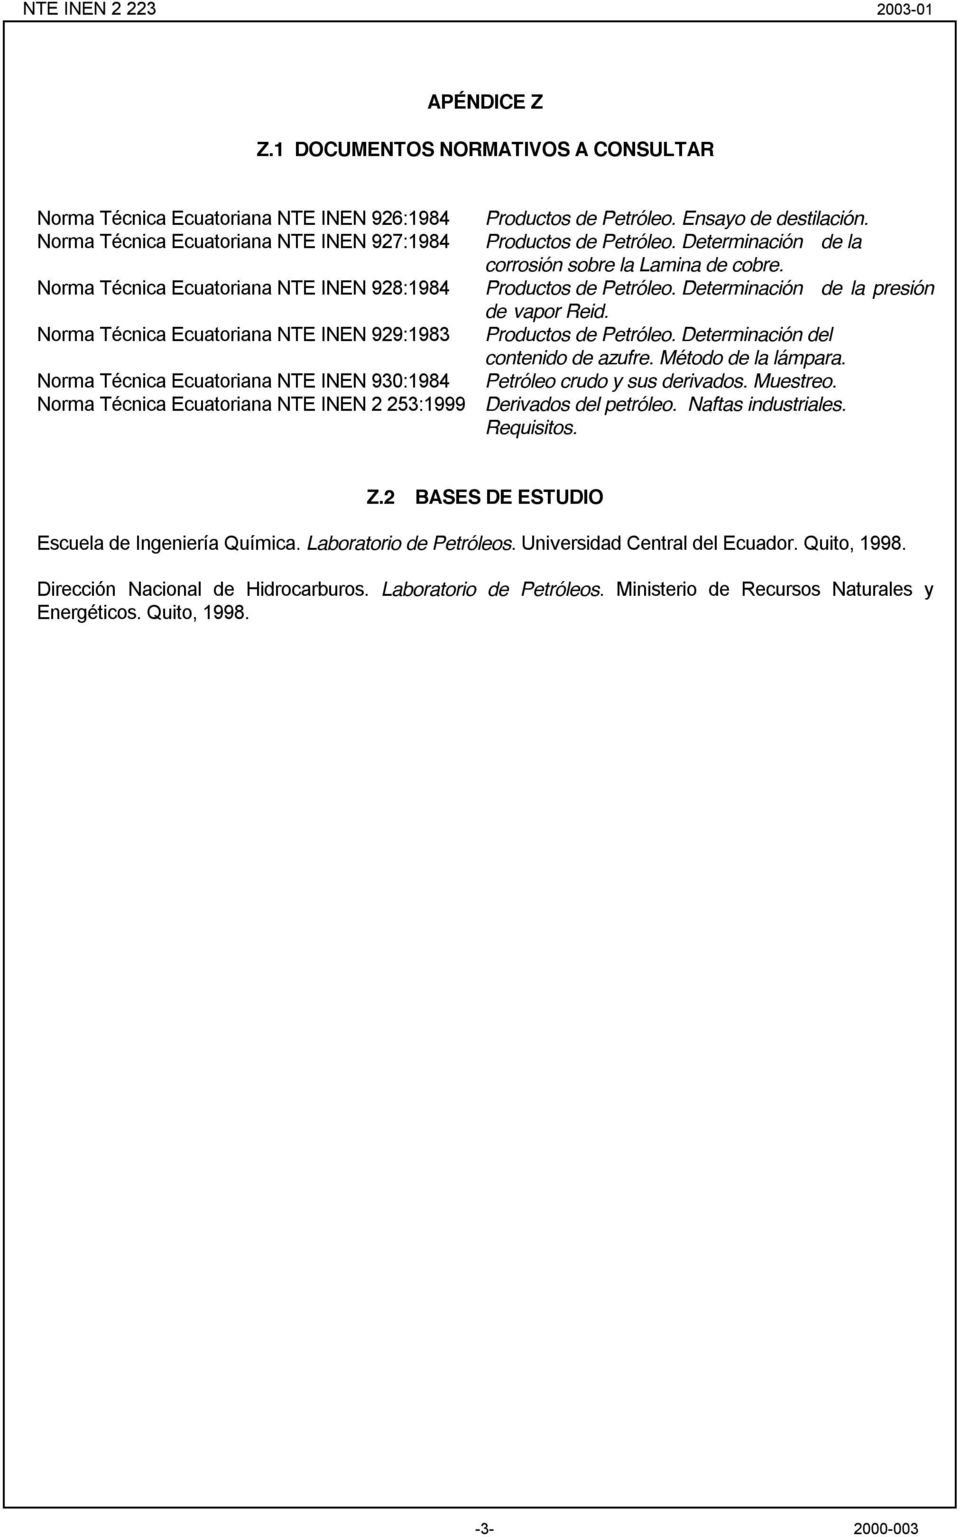 Determinación de la presión de vapor Reid. Norma Técnica Ecuatoriana NTE INEN 929:1983 Productos de Petróleo. Determinación del contenido de azufre. Método de la lámpara.